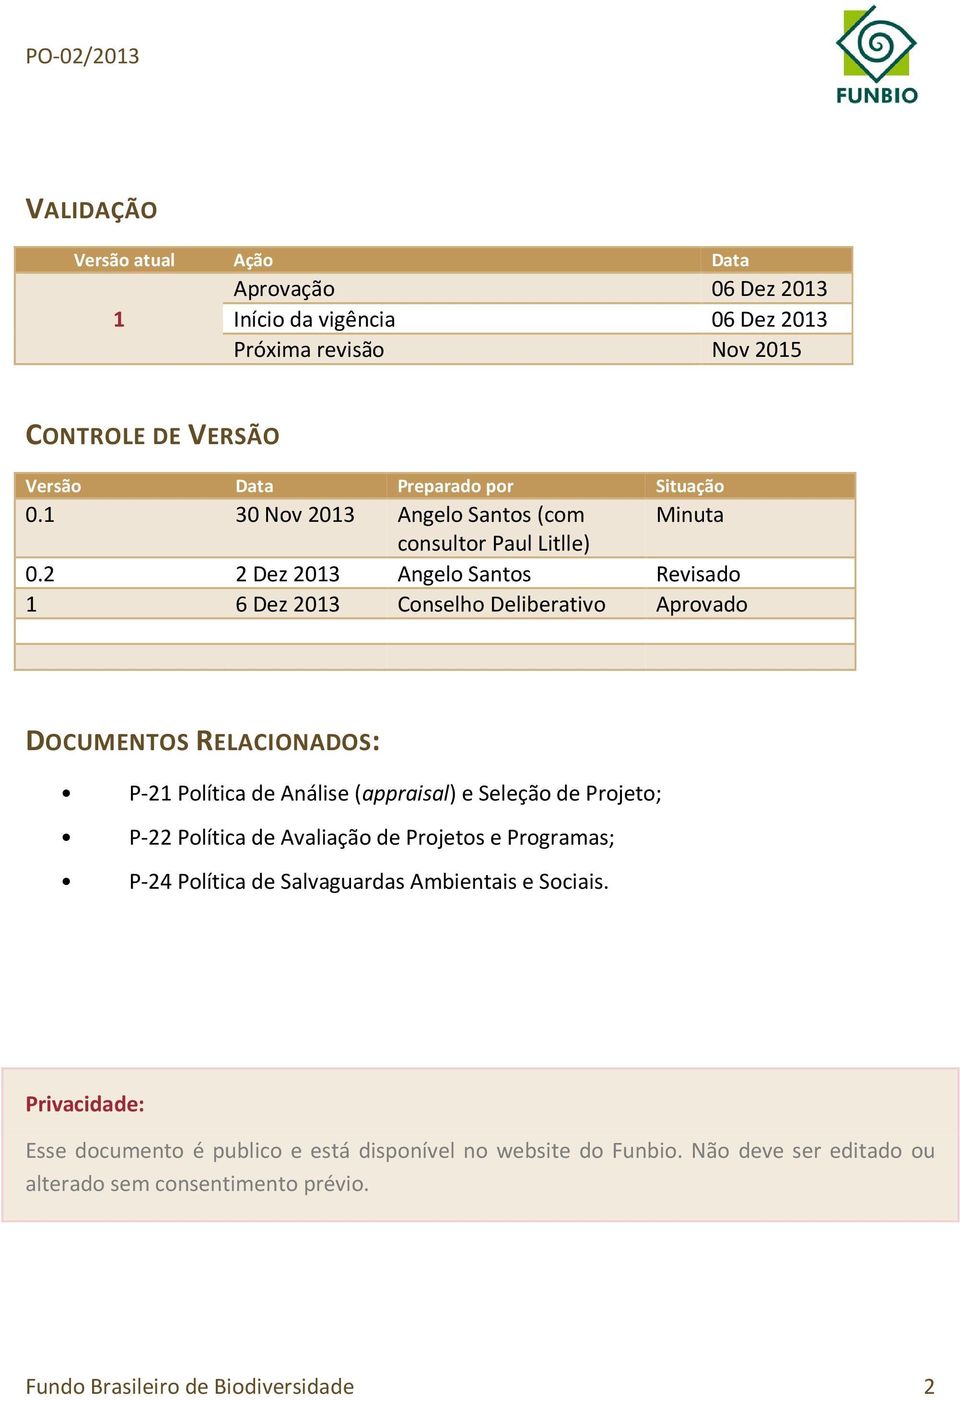 2 2 Dez 2013 Angelo Santos Revisado 1 6 Dez 2013 Conselho Deliberativo Aprovado DOCUMENTOS RELACIONADOS: P-21 Política de Análise (appraisal) e Seleção de Projeto; P-22